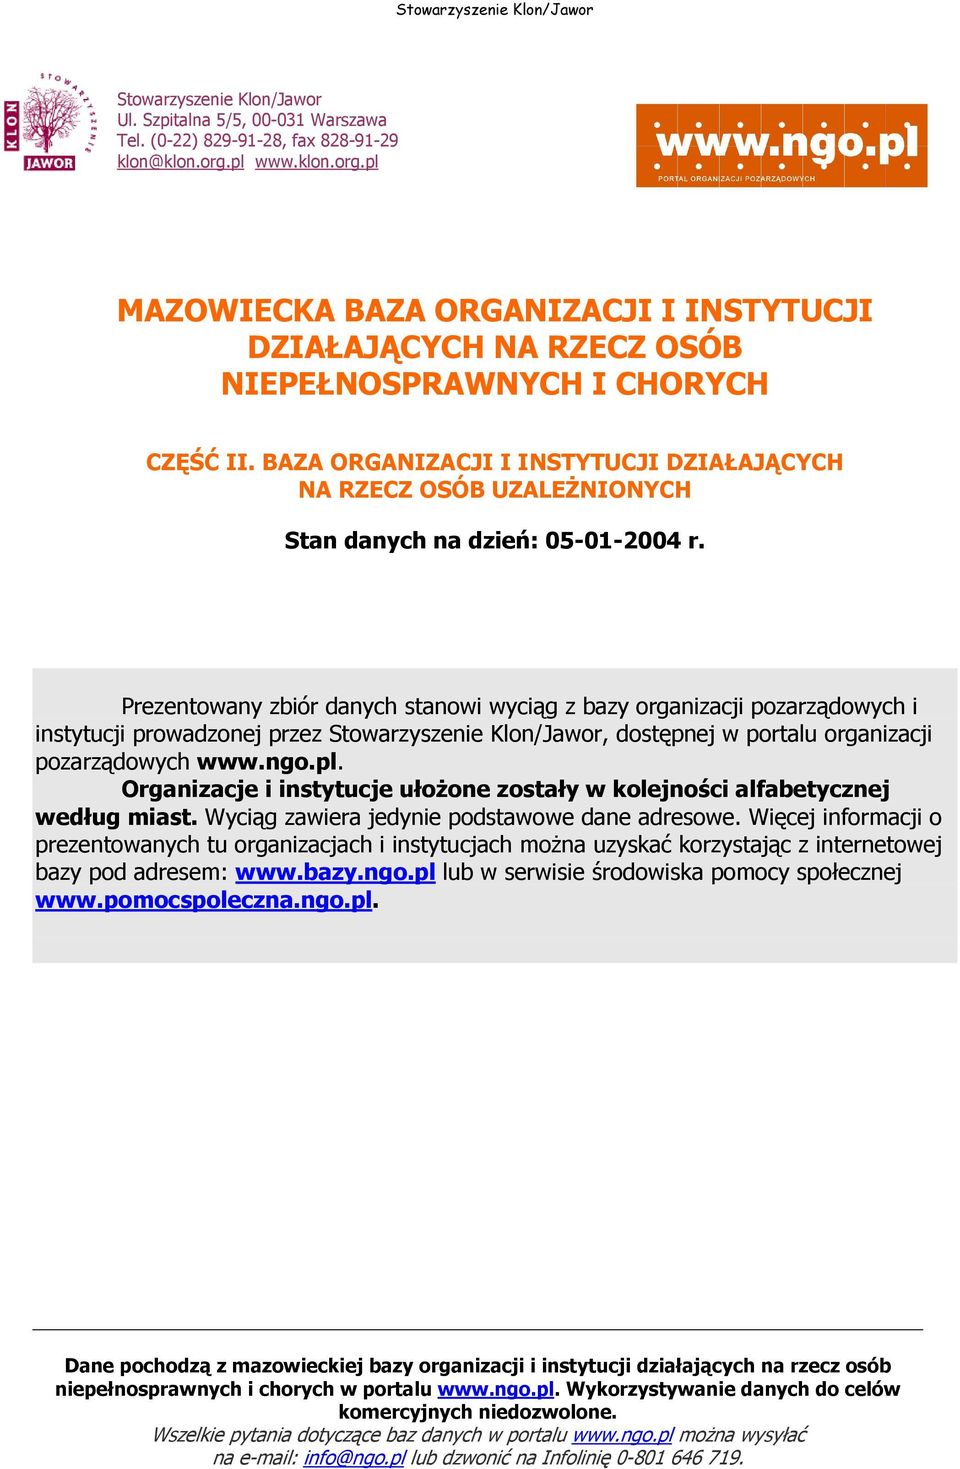 Prezentowany zbiór danych stanowi wyciąg z bazy organizacji pozarządowych i instytucji prowadzonej przez, dostępnej w portalu organizacji pozarządowych www.ngo.pl.